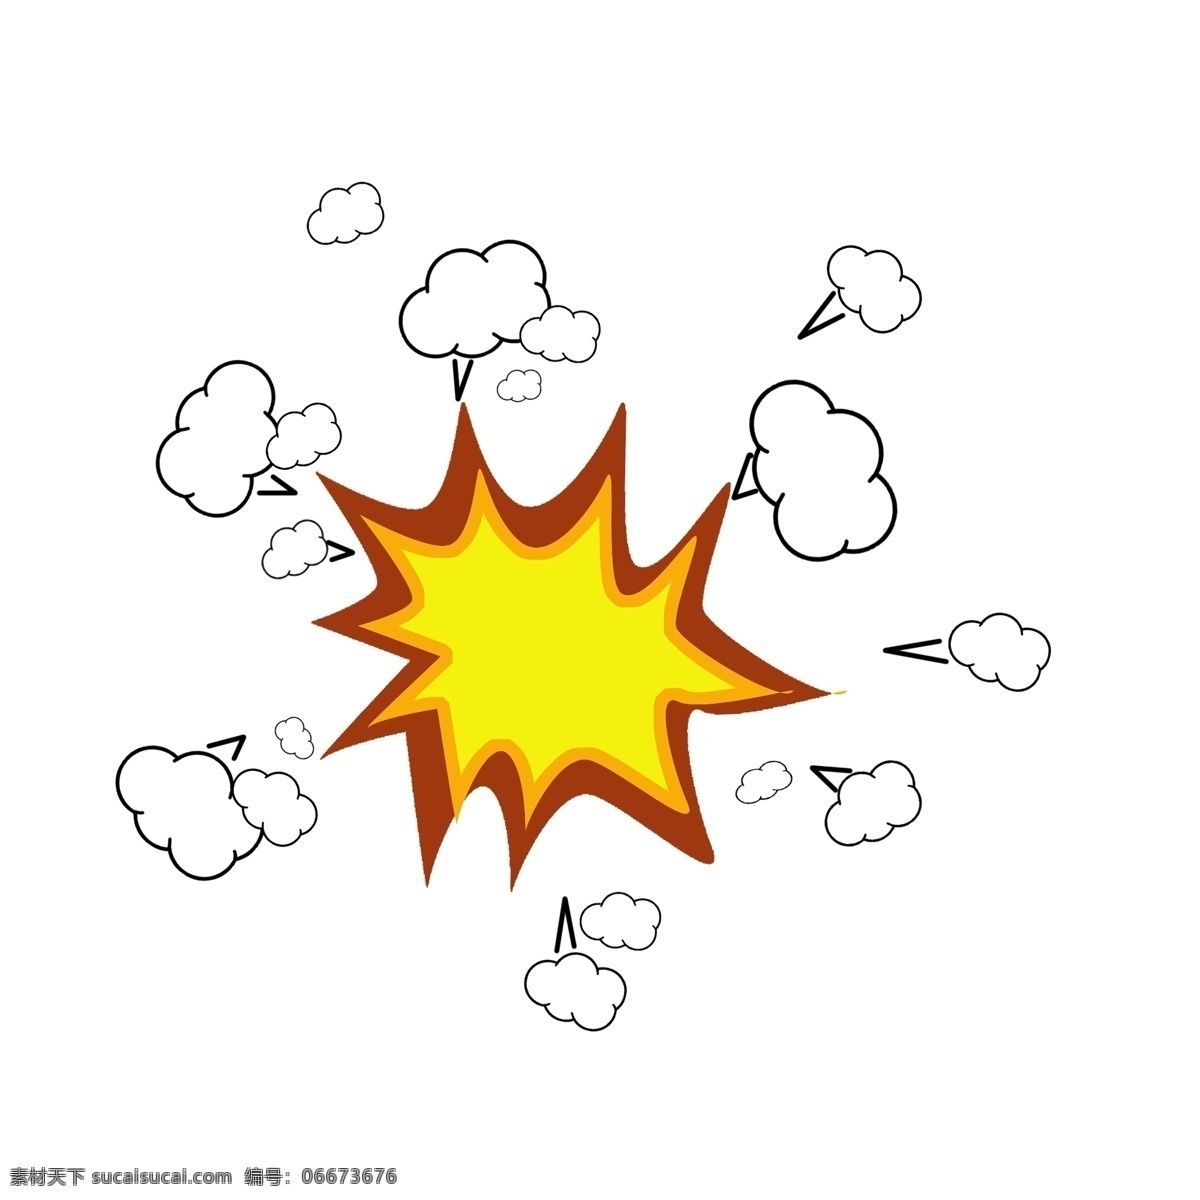 手绘 卡通 爆炸 气泡 配 图 爆炸团 炸裂 简单配图 生气 怒了 装饰爆炸团子 爆炸装饰图案